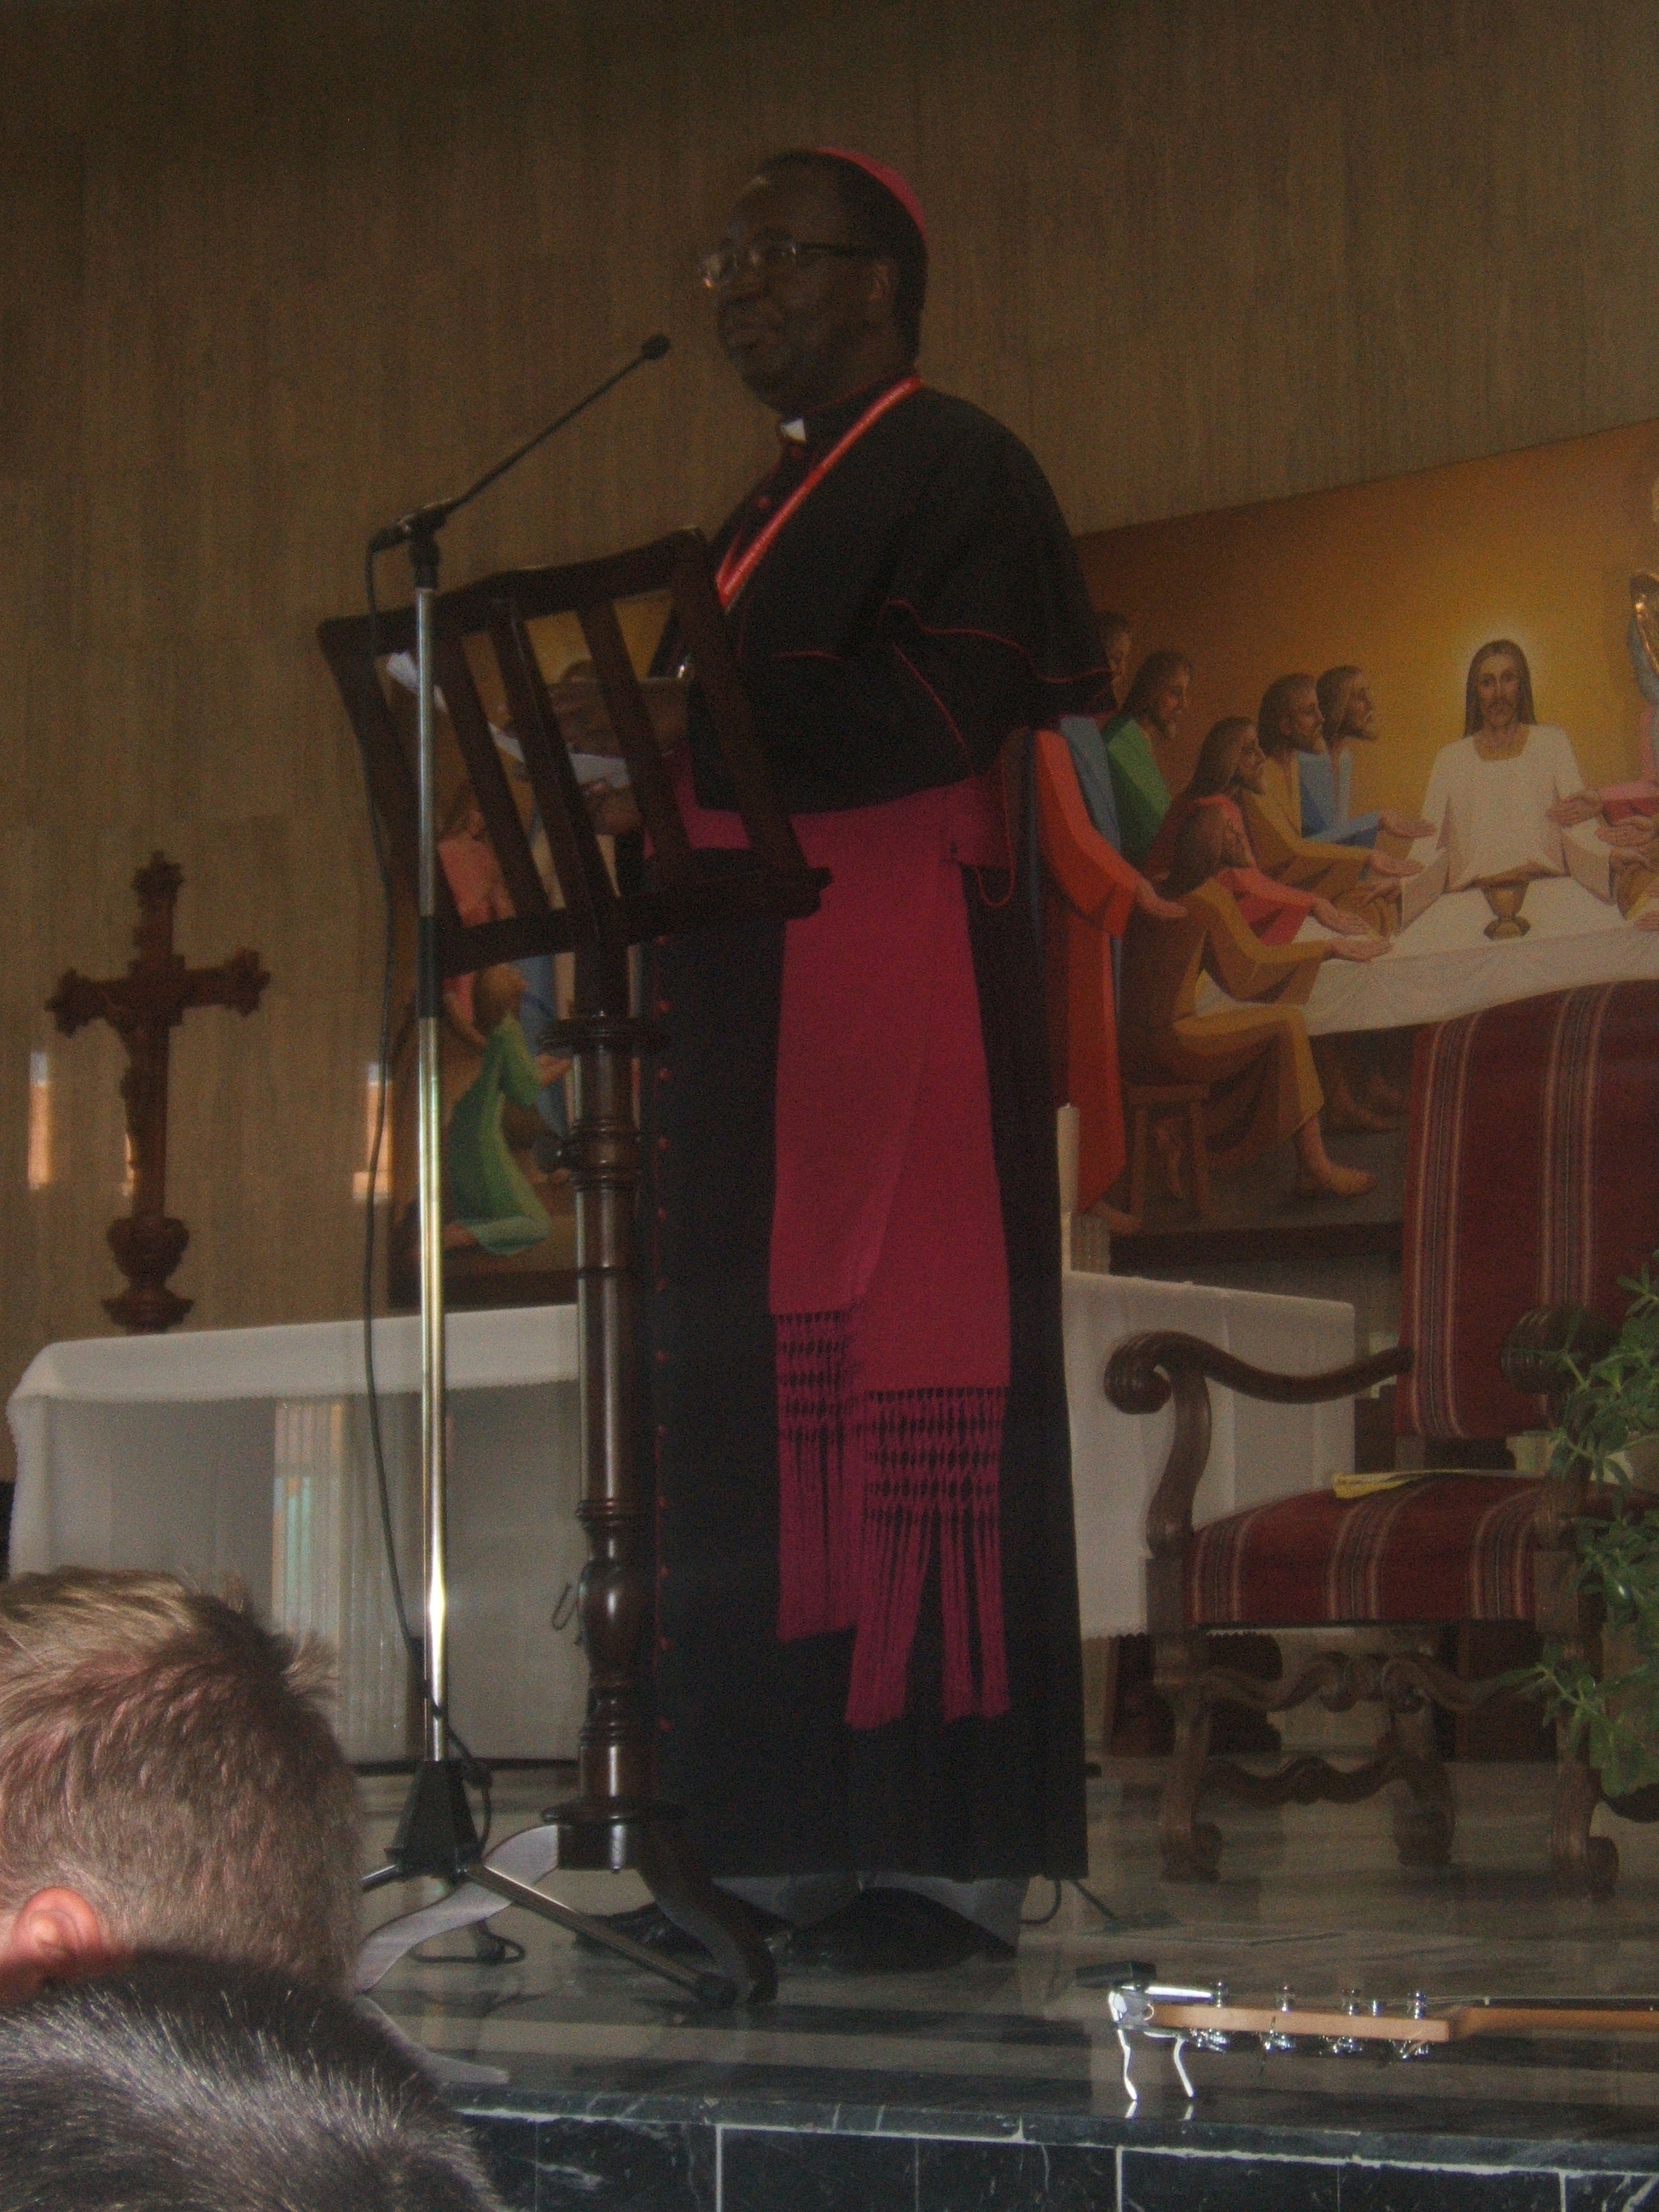 Faite par Mgr Marcel Madila Basanguka, archevêque de Kananga, en République Démocratique du Congo.